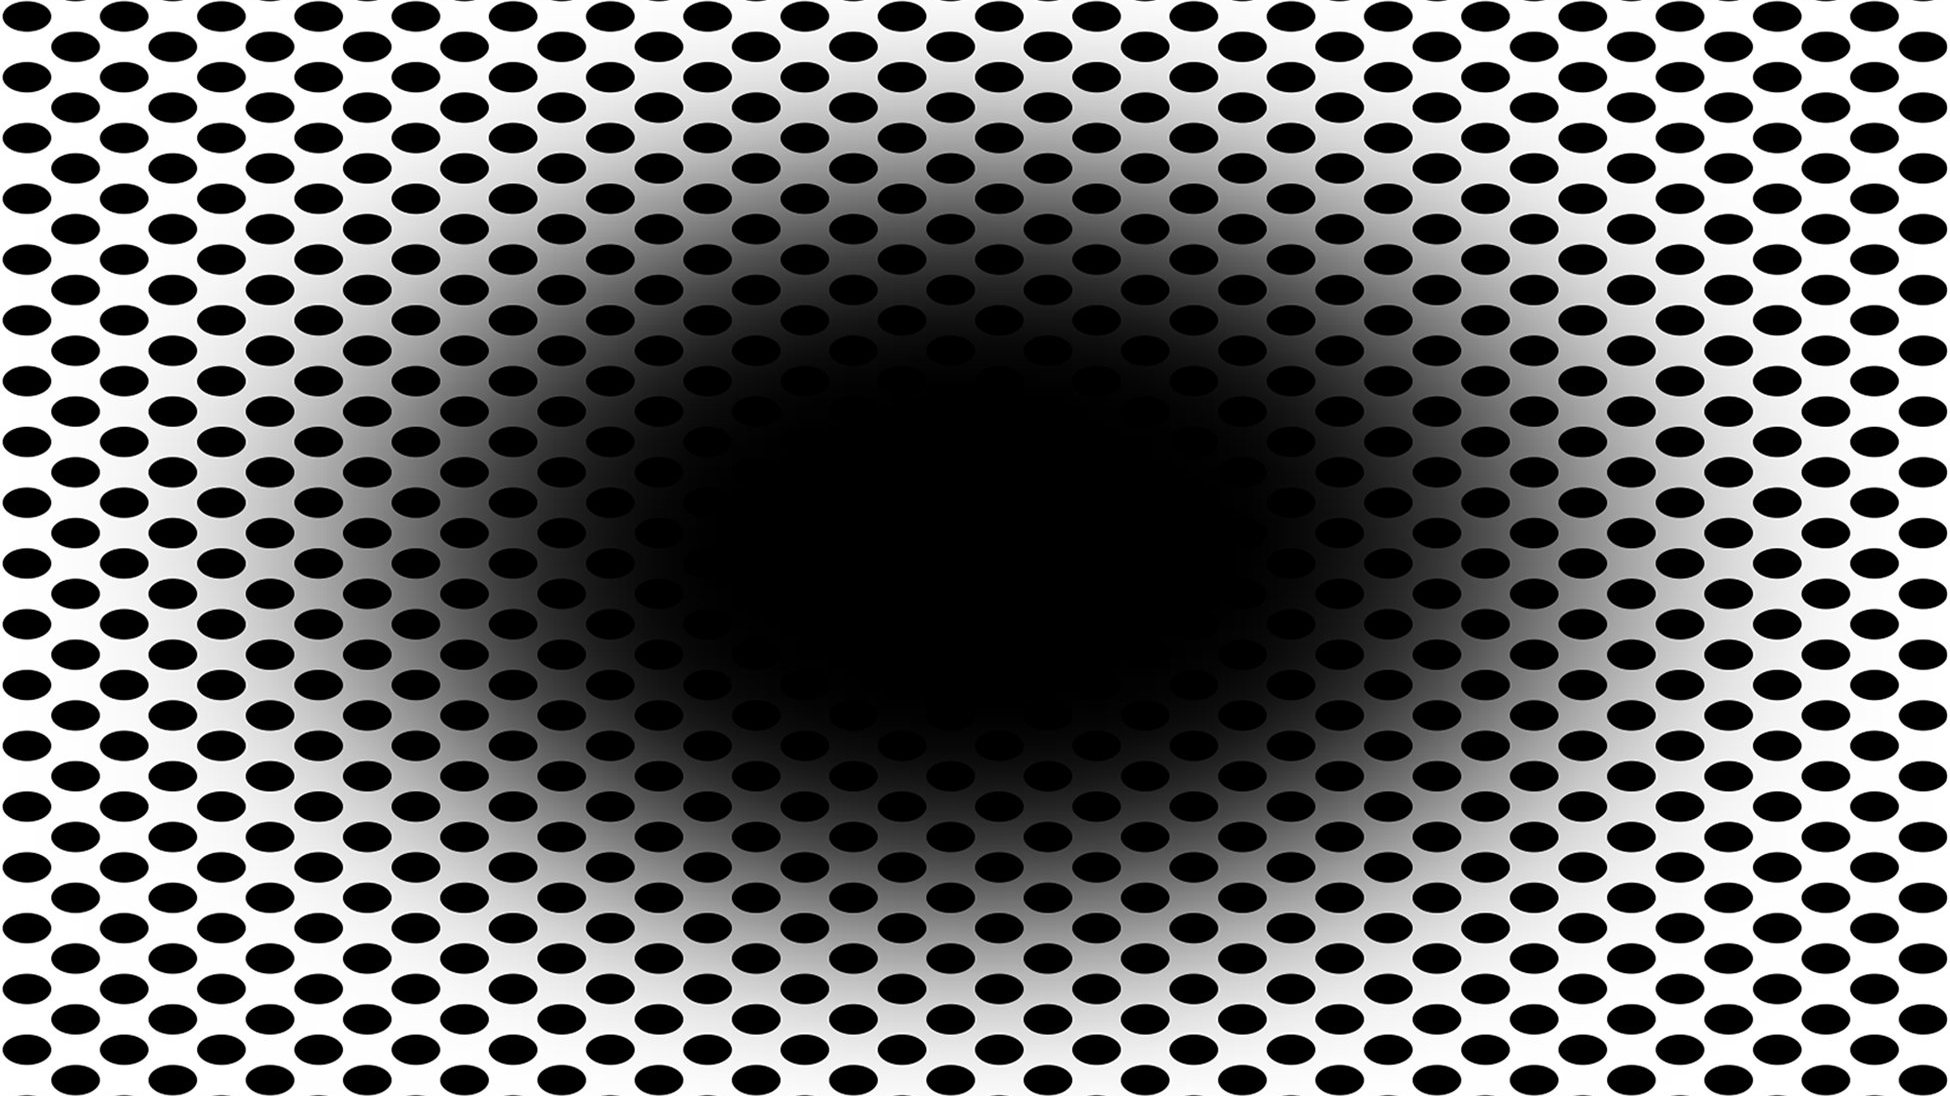 A imagem consiste numa grande elipse negra ao centro, cercada por pequenas elipses também elas pretas, num fundo branco. Tem em si uma lição sobre o funcionamento do cérebro